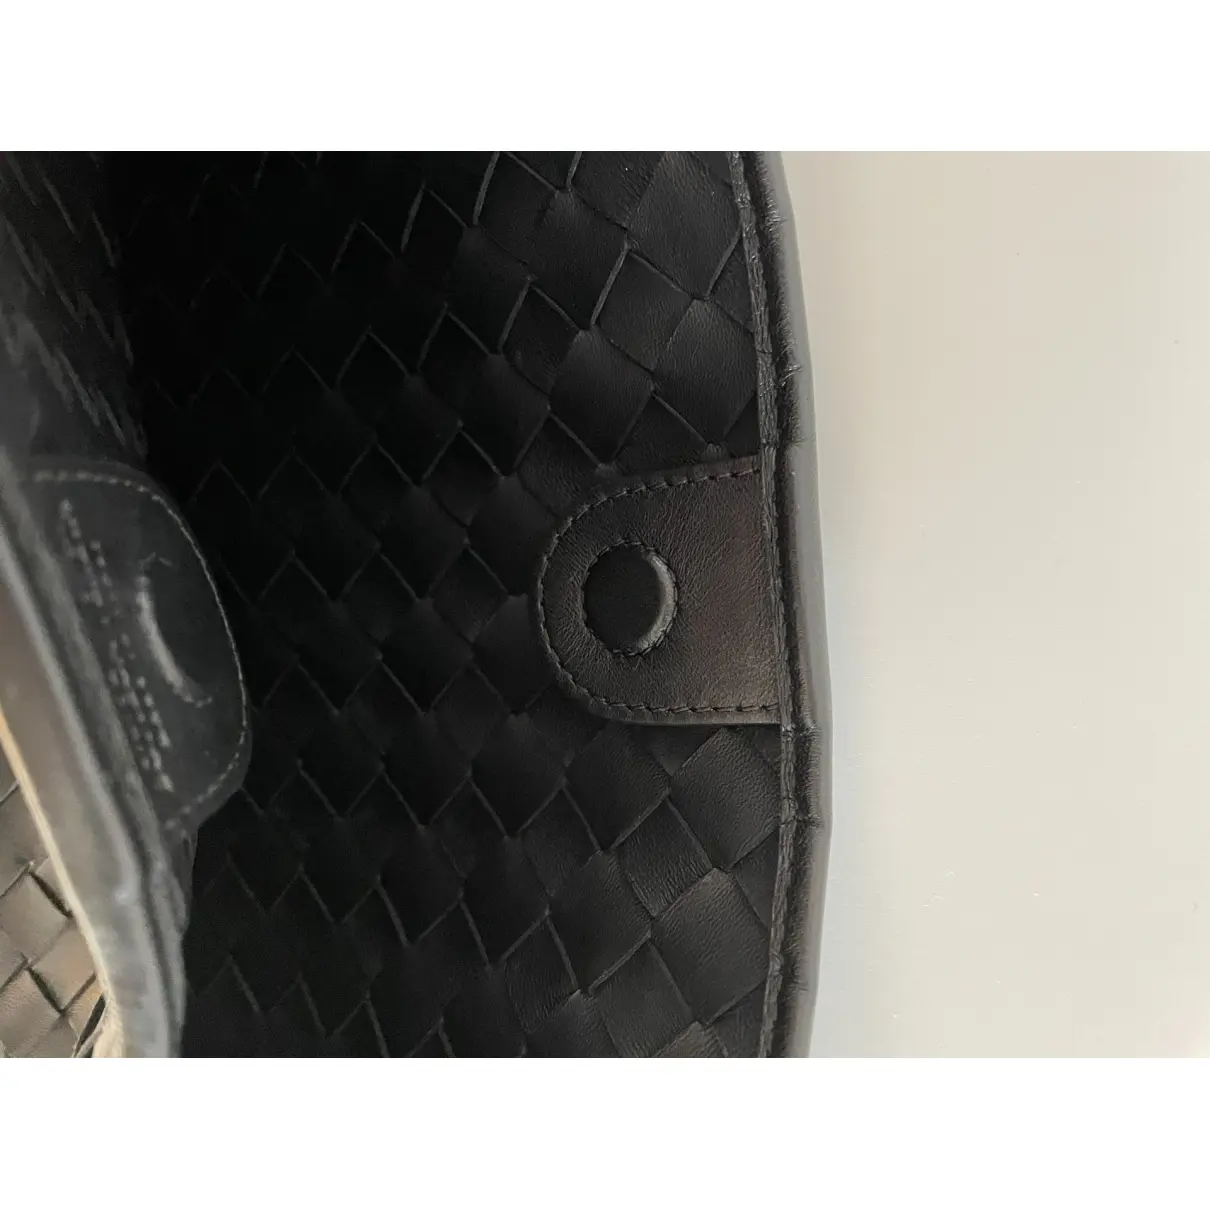 Sardine leather handbag Bottega Veneta